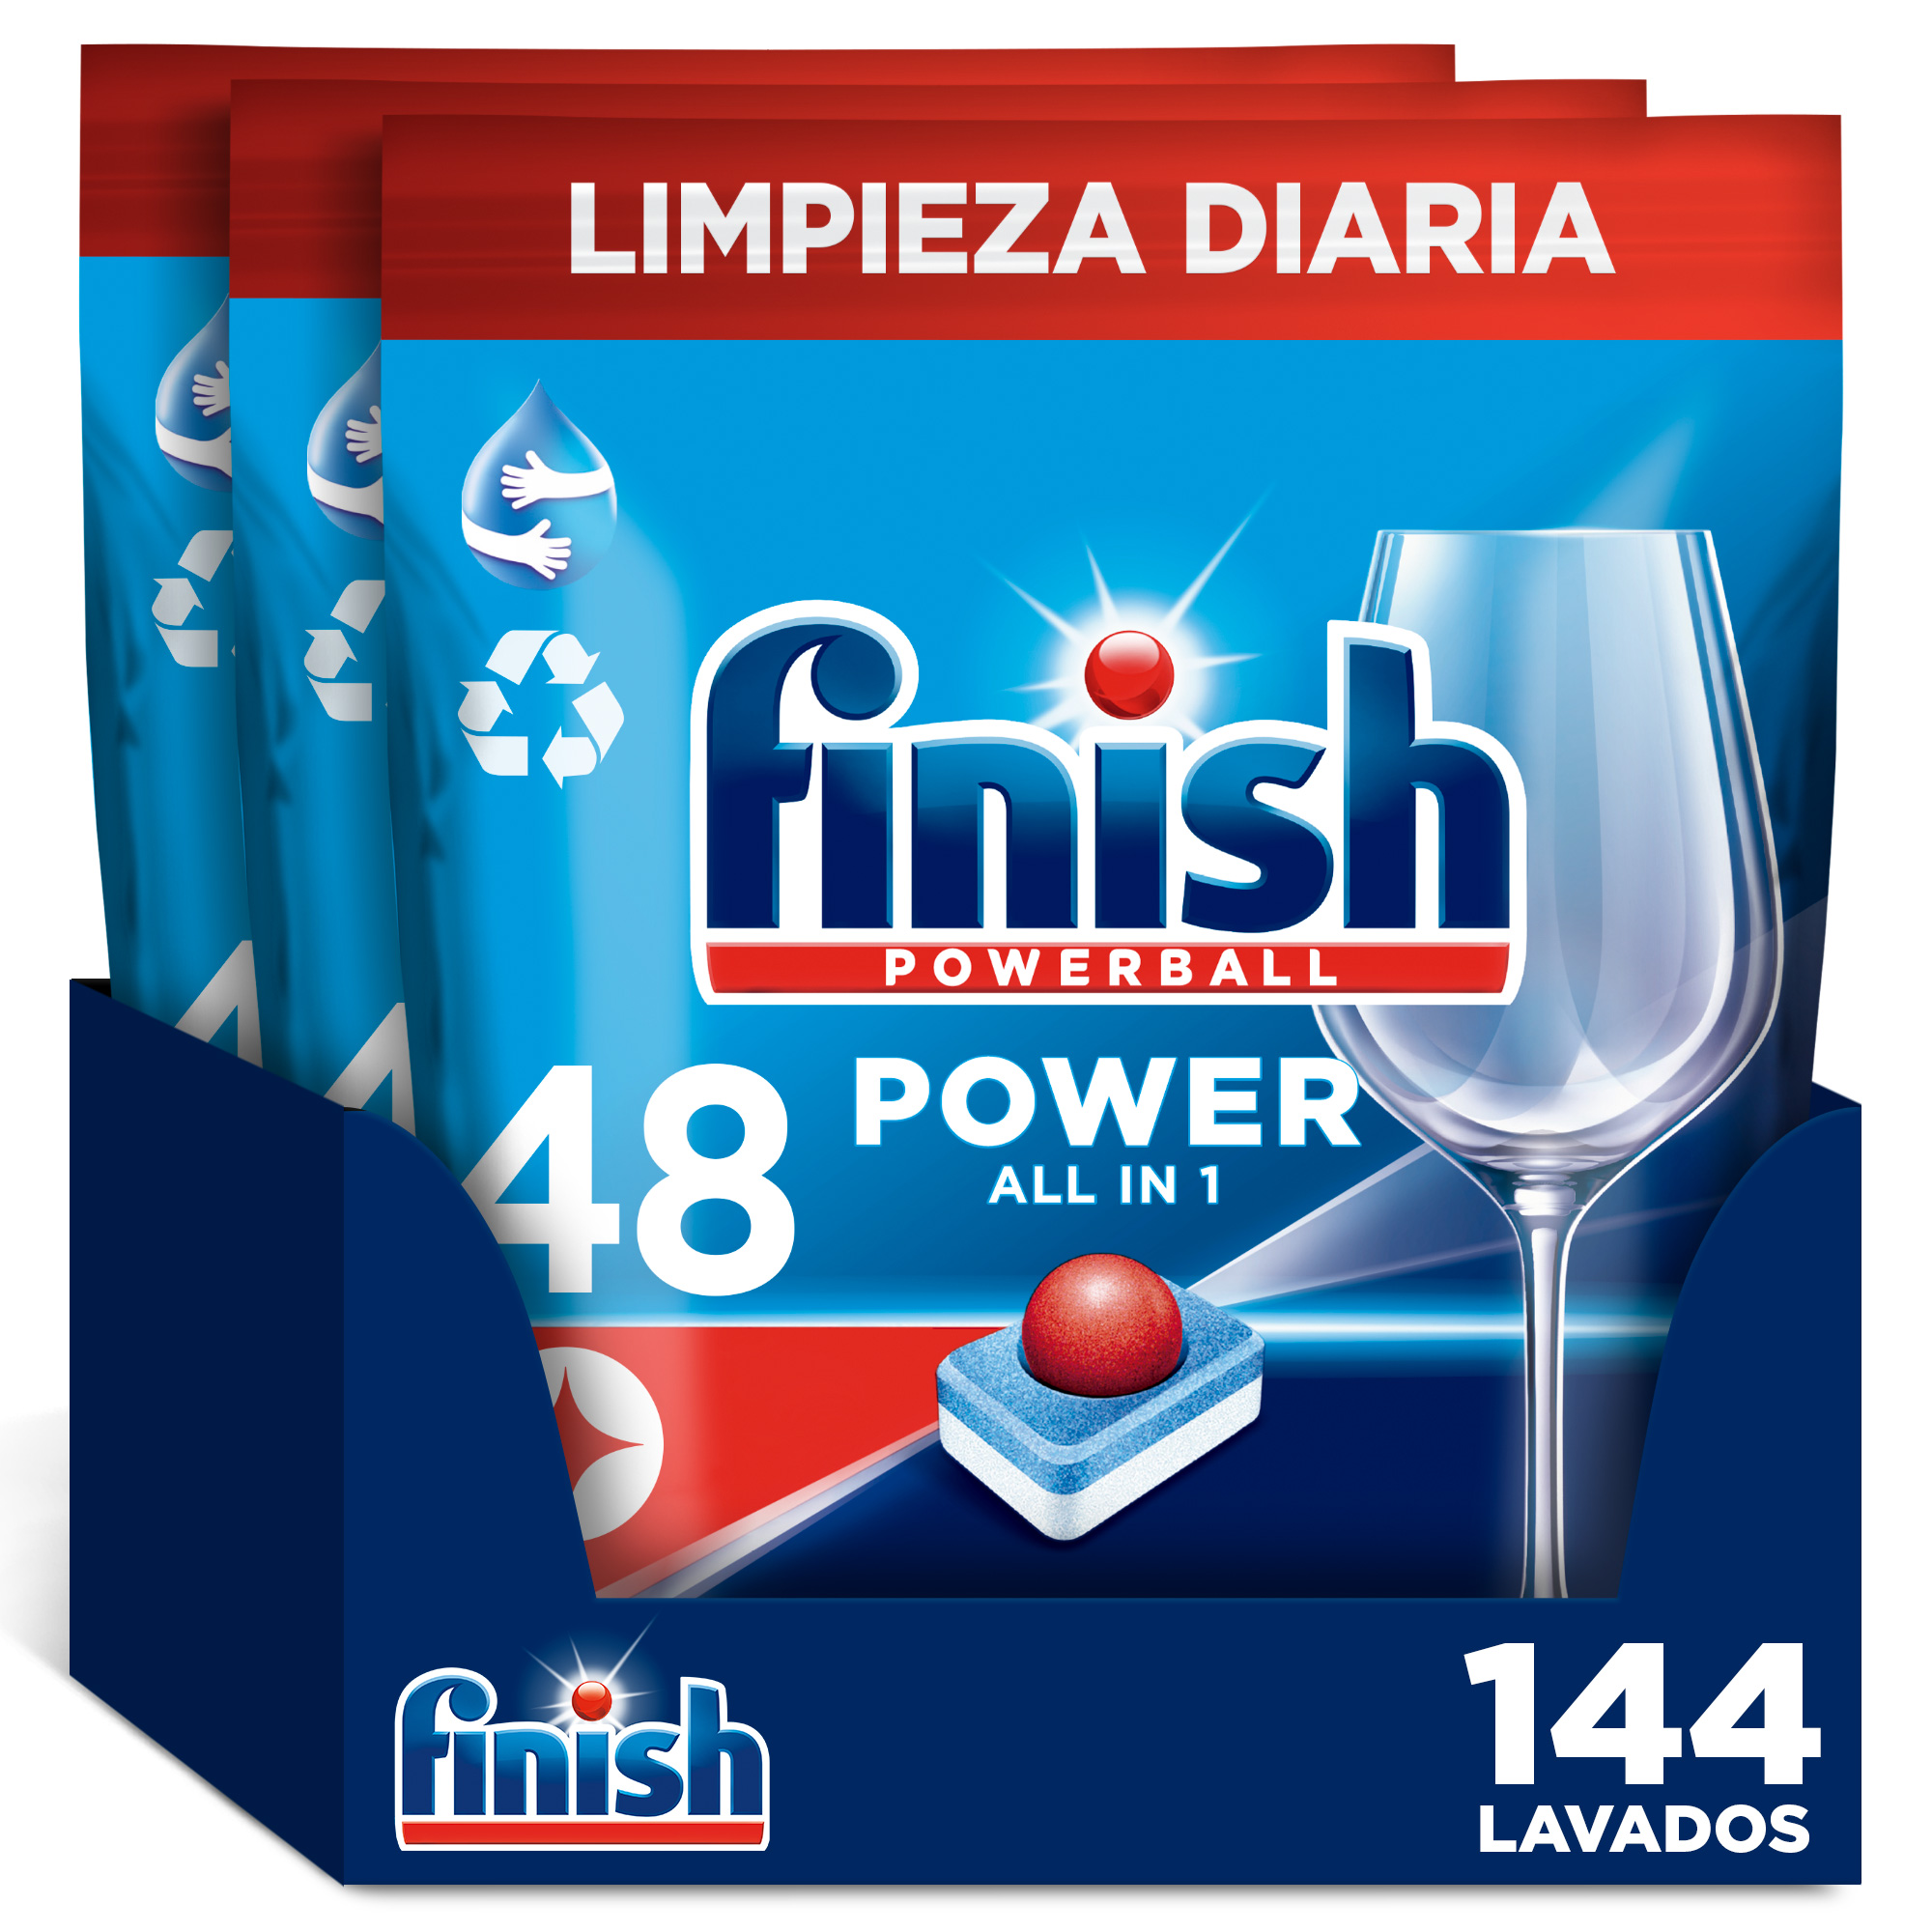 Finish - Finish Poweball Power All in 1 Pastillas para lavavajillas Regular 144 pastillas, Limpieza y Brillo Diario